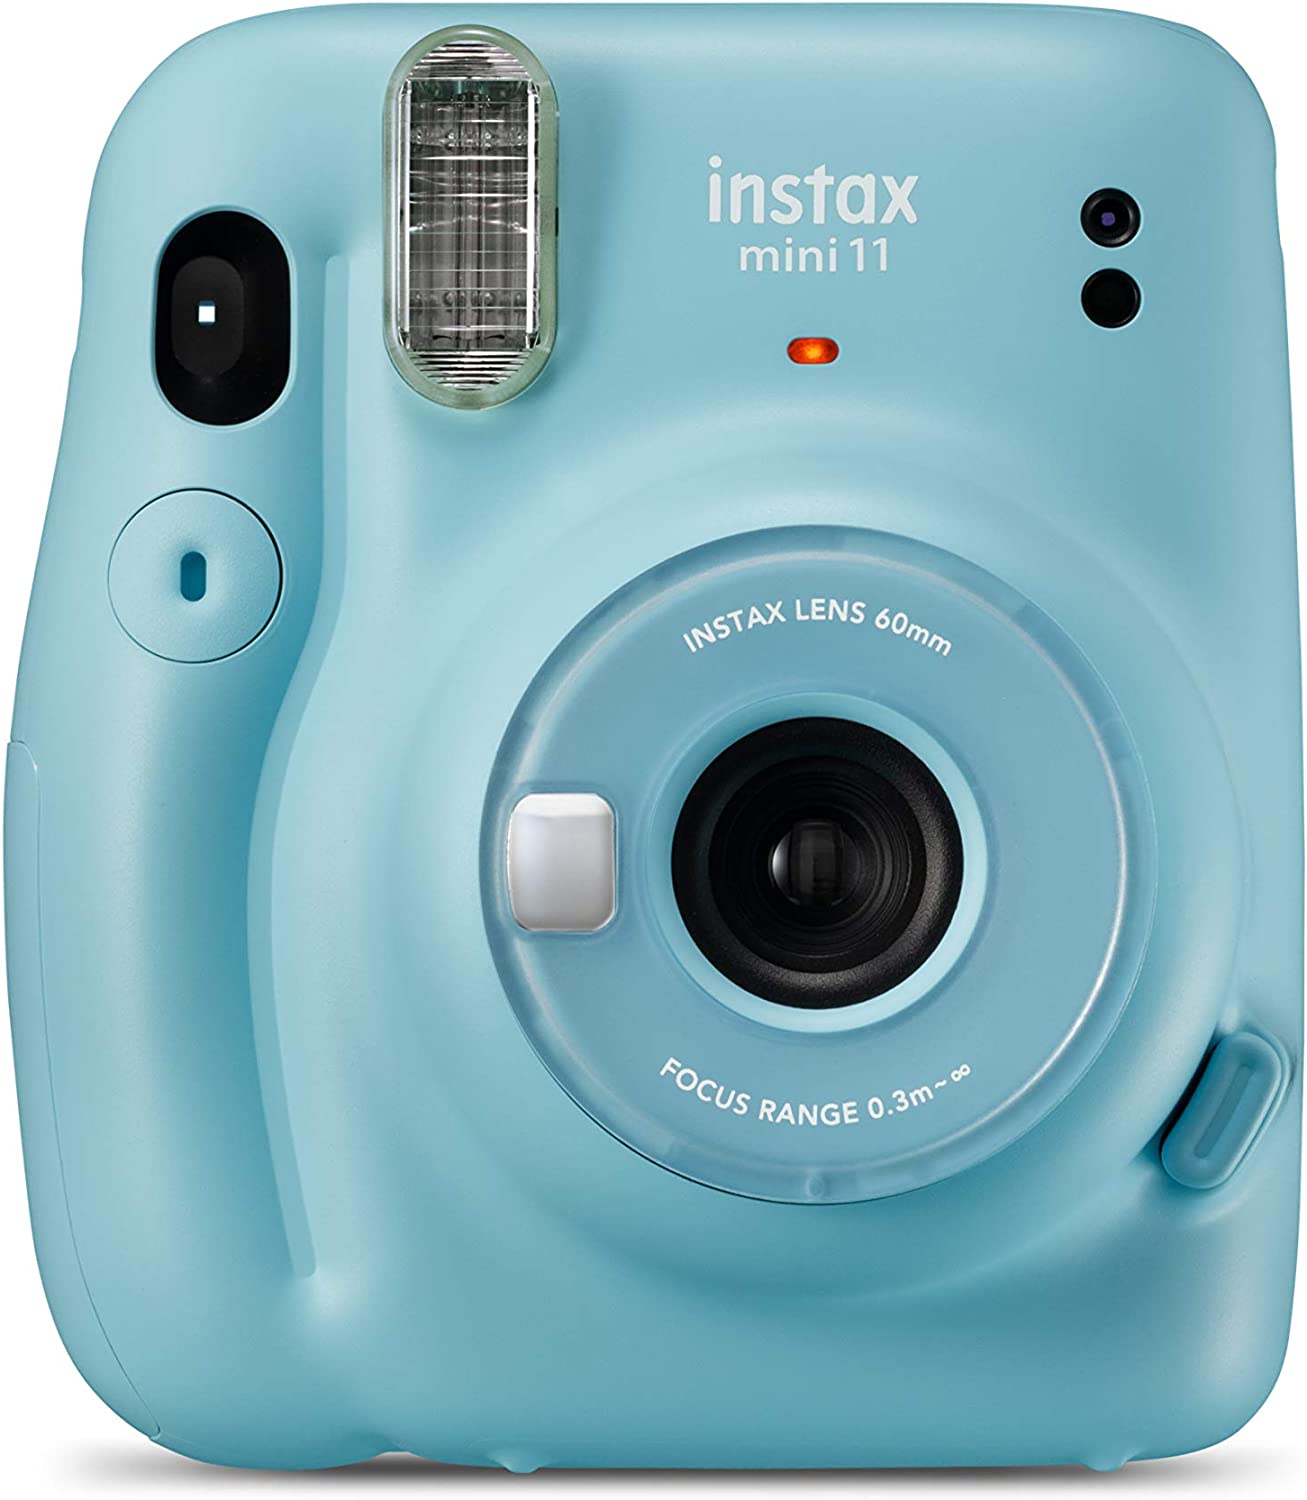 Fujifilm Instax Mini 11 Sky Blue Camara Instantanea - Tamaño de Imagen 62x46mm - Flash Auto - Mini Espejo para Selfies - Correa de Mano y 2 Botones de Obturador Diferentes